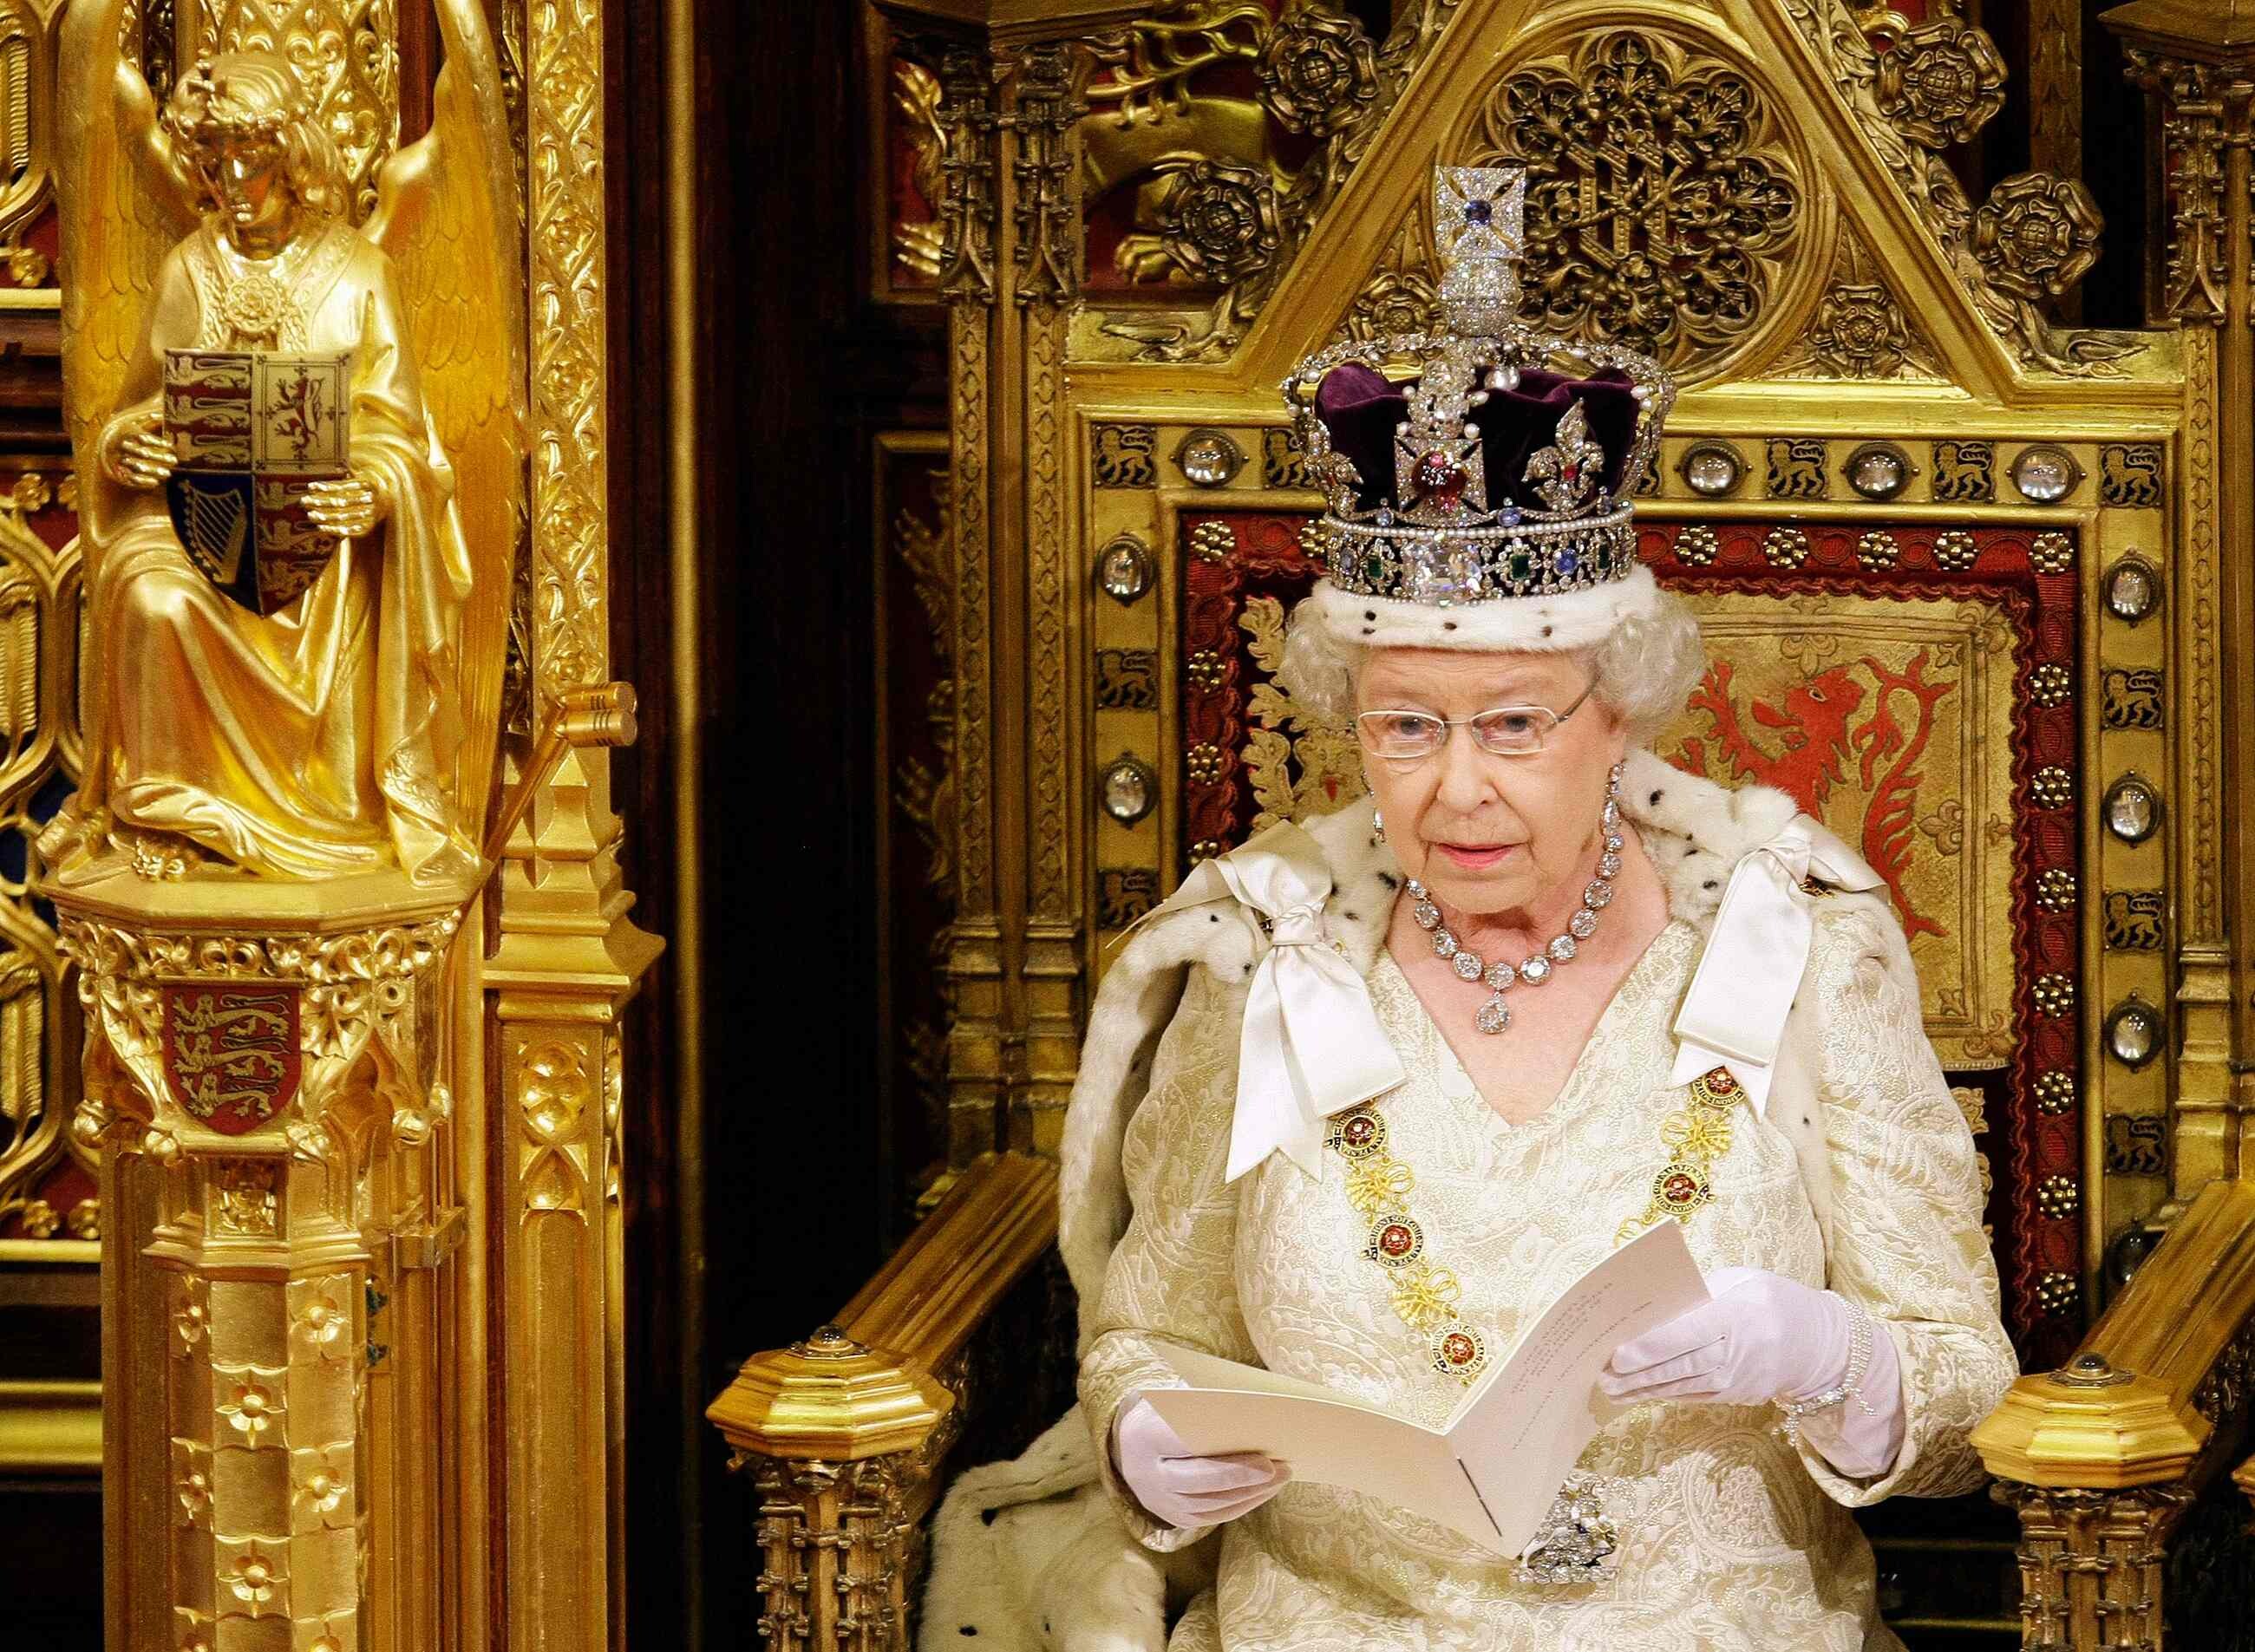 Elizabeth II (Celebs), Queen Elizabeth II in HD, Iconic monarch, Royal grace, 2600x1910 HD Desktop